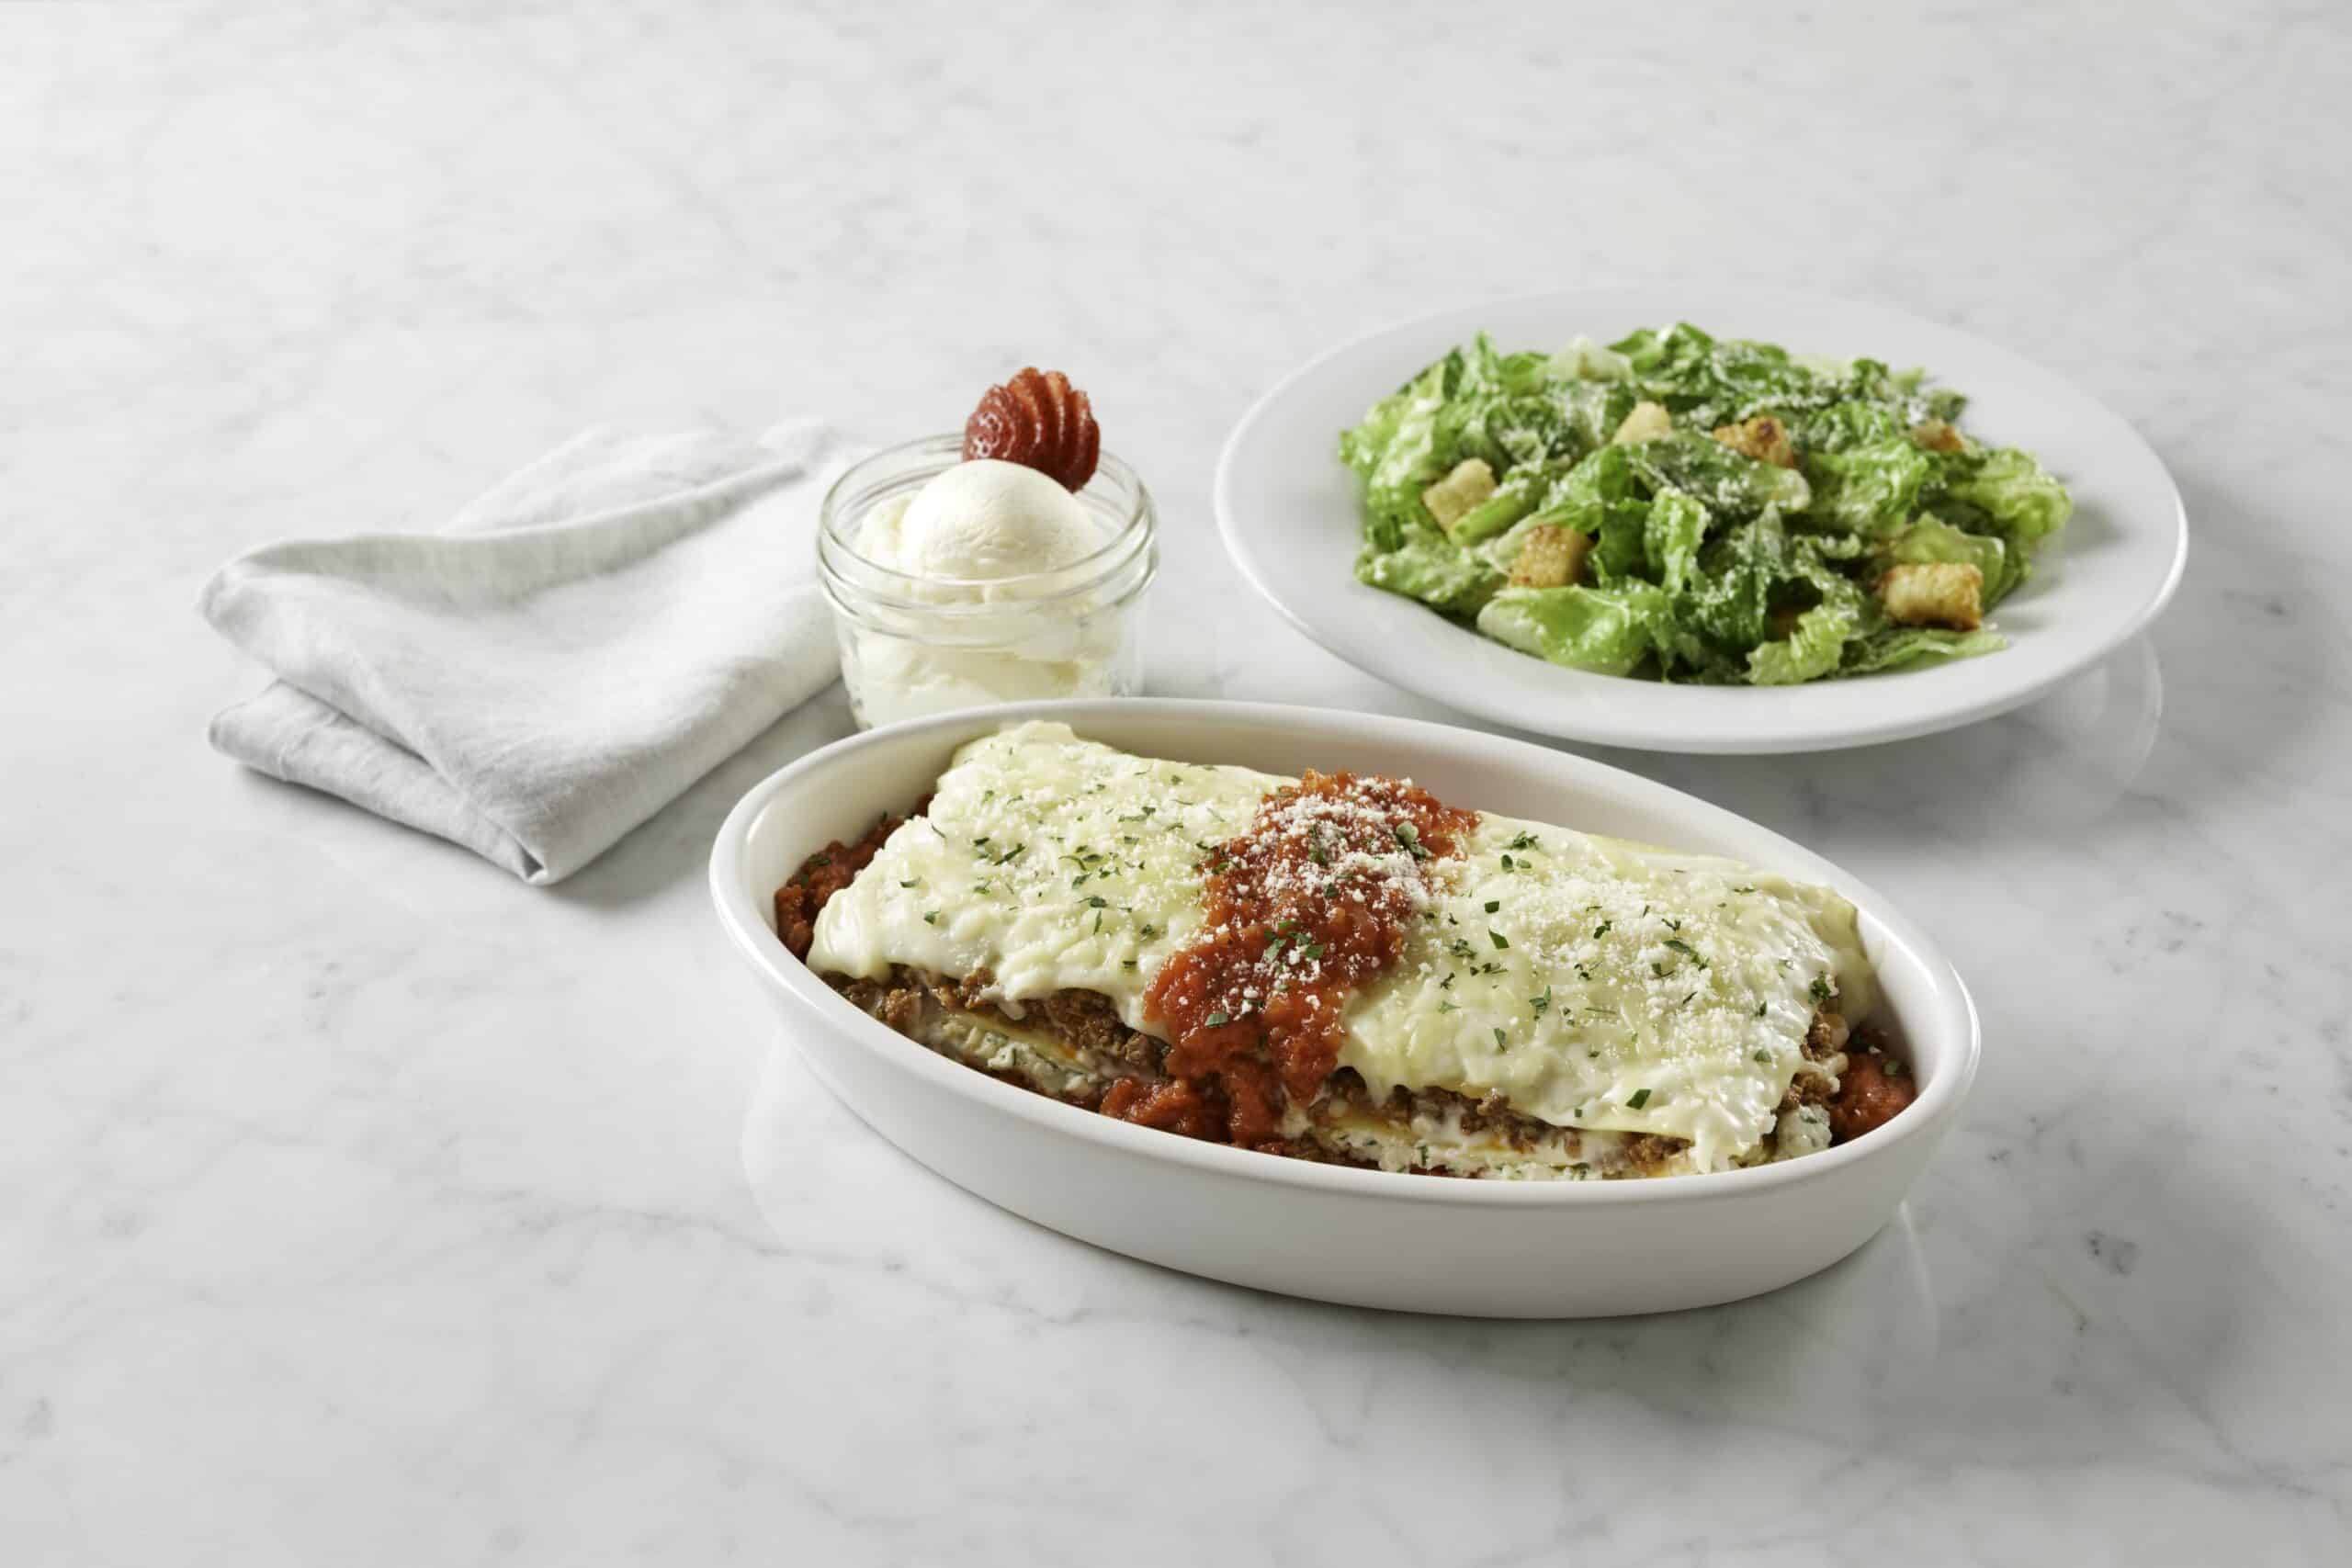 Brio lasagna with caesar salad on a table